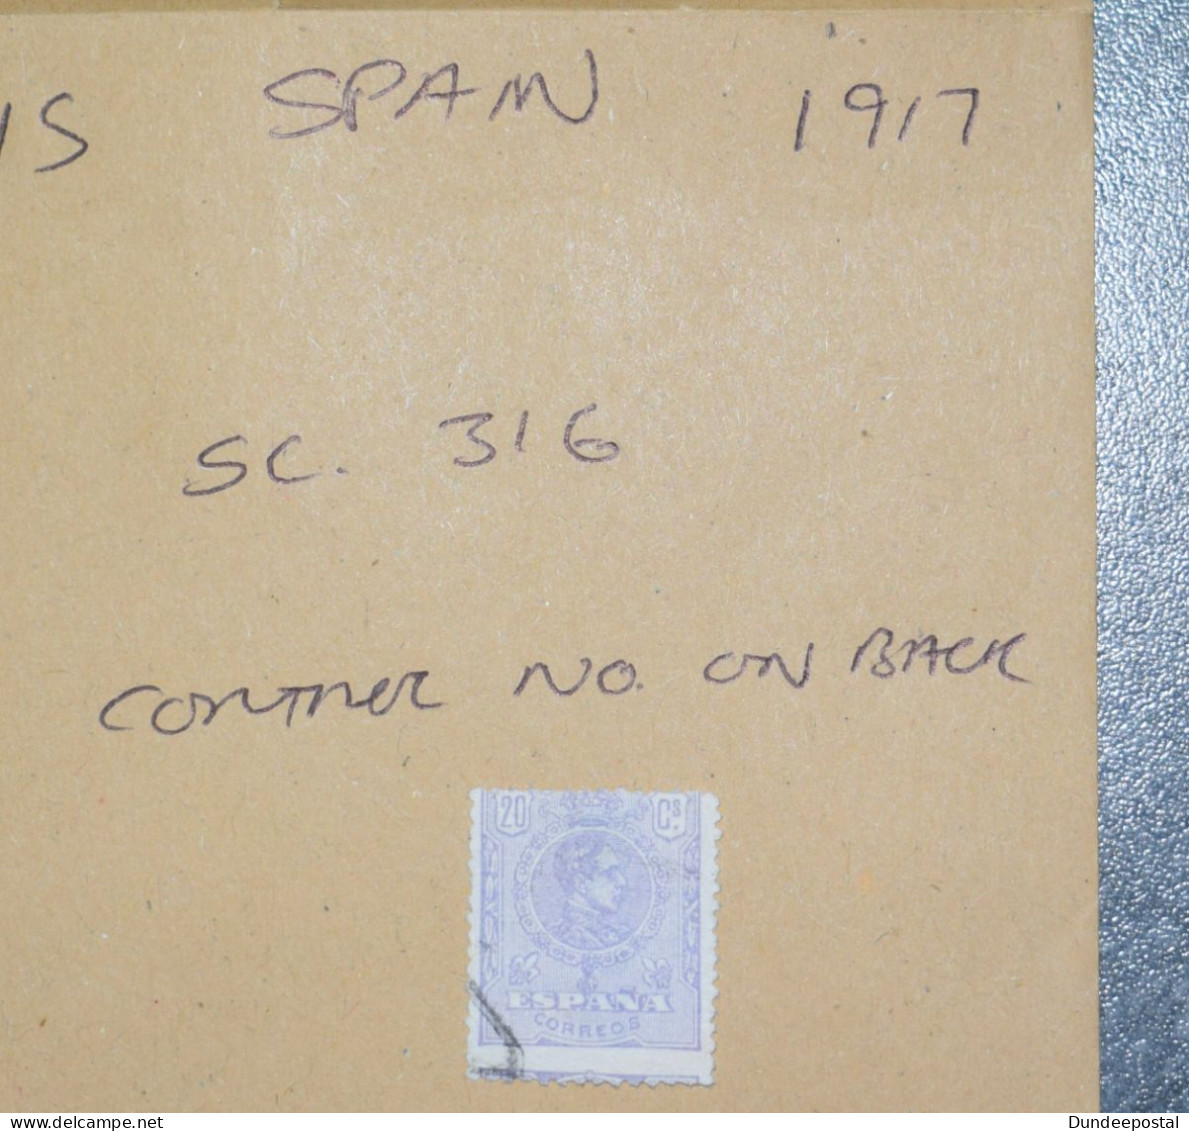 SPAIN  STAMPS  Alfonso Control Numbers  1917  ~~L@@K~~ - Oblitérés